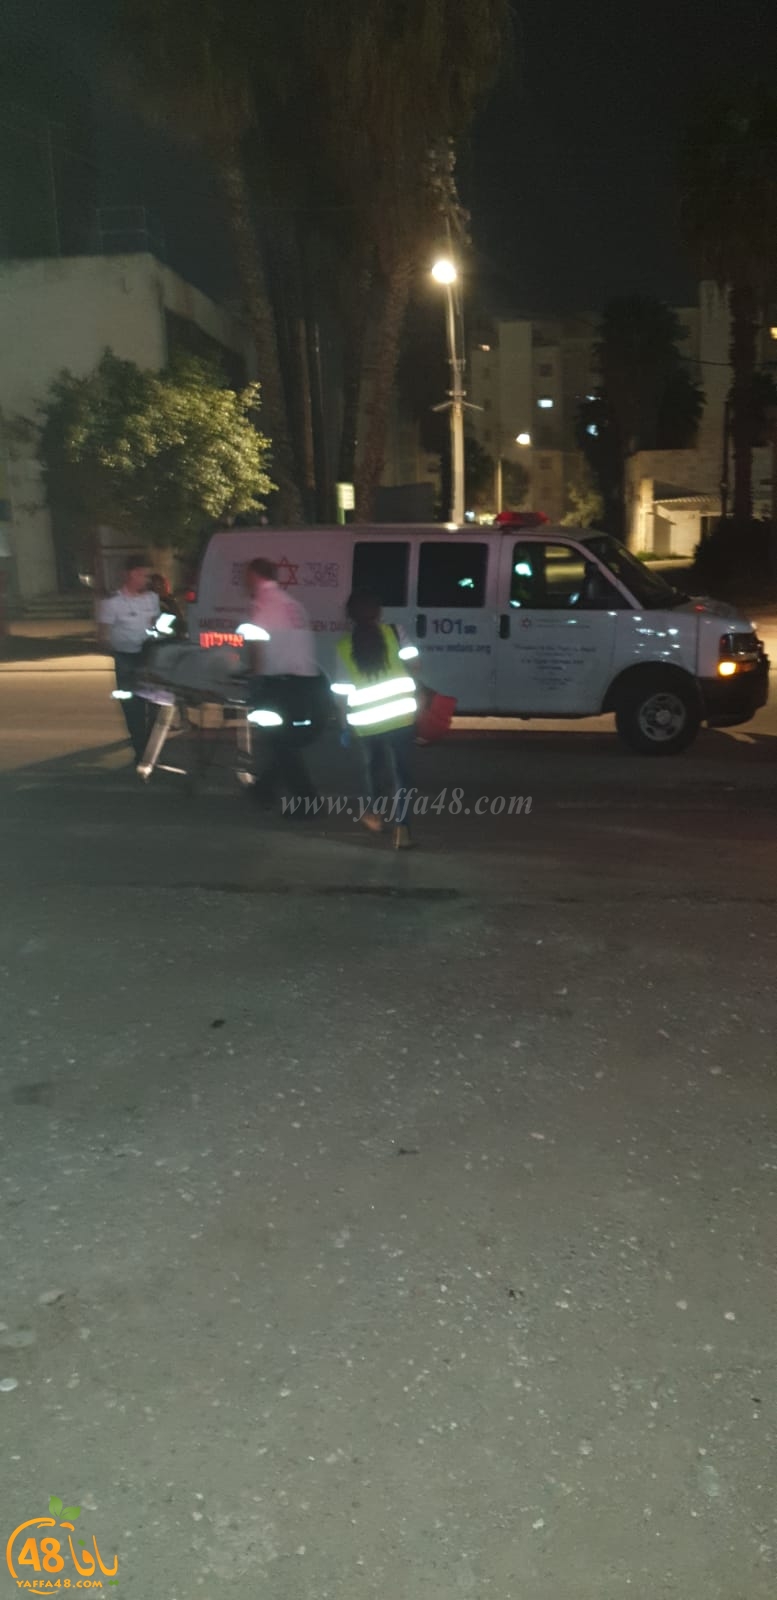  اللد: اصابة خطرة لمواطن اثر تعرضه لحادث دهس بالمدينة